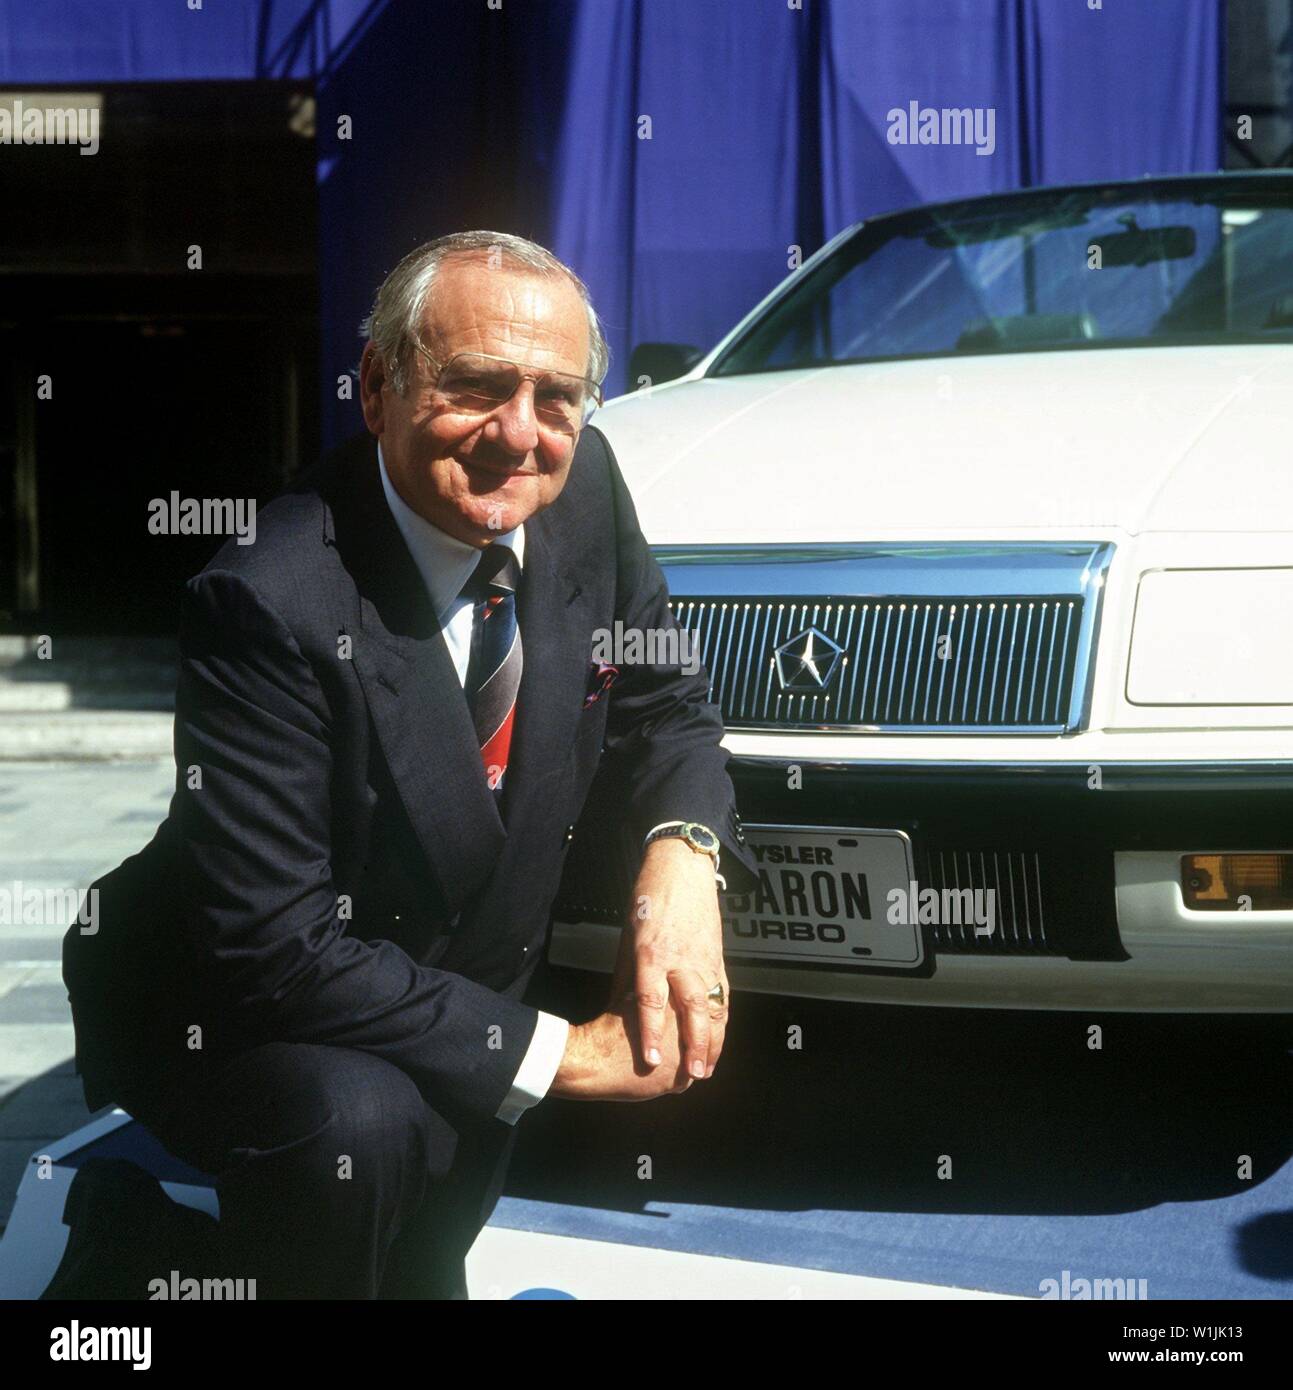 Der Vorsitzender der Geschäftsführung der amerikanische Automobilkonzern Chrysler, Lee Iacocca, am 8. September, 1987 auf der Internationalen Automobil-Ausstellung (IAA) in Frankfurt am Main vor einem Chrysler Modell. | Verwendung weltweit Stockfoto